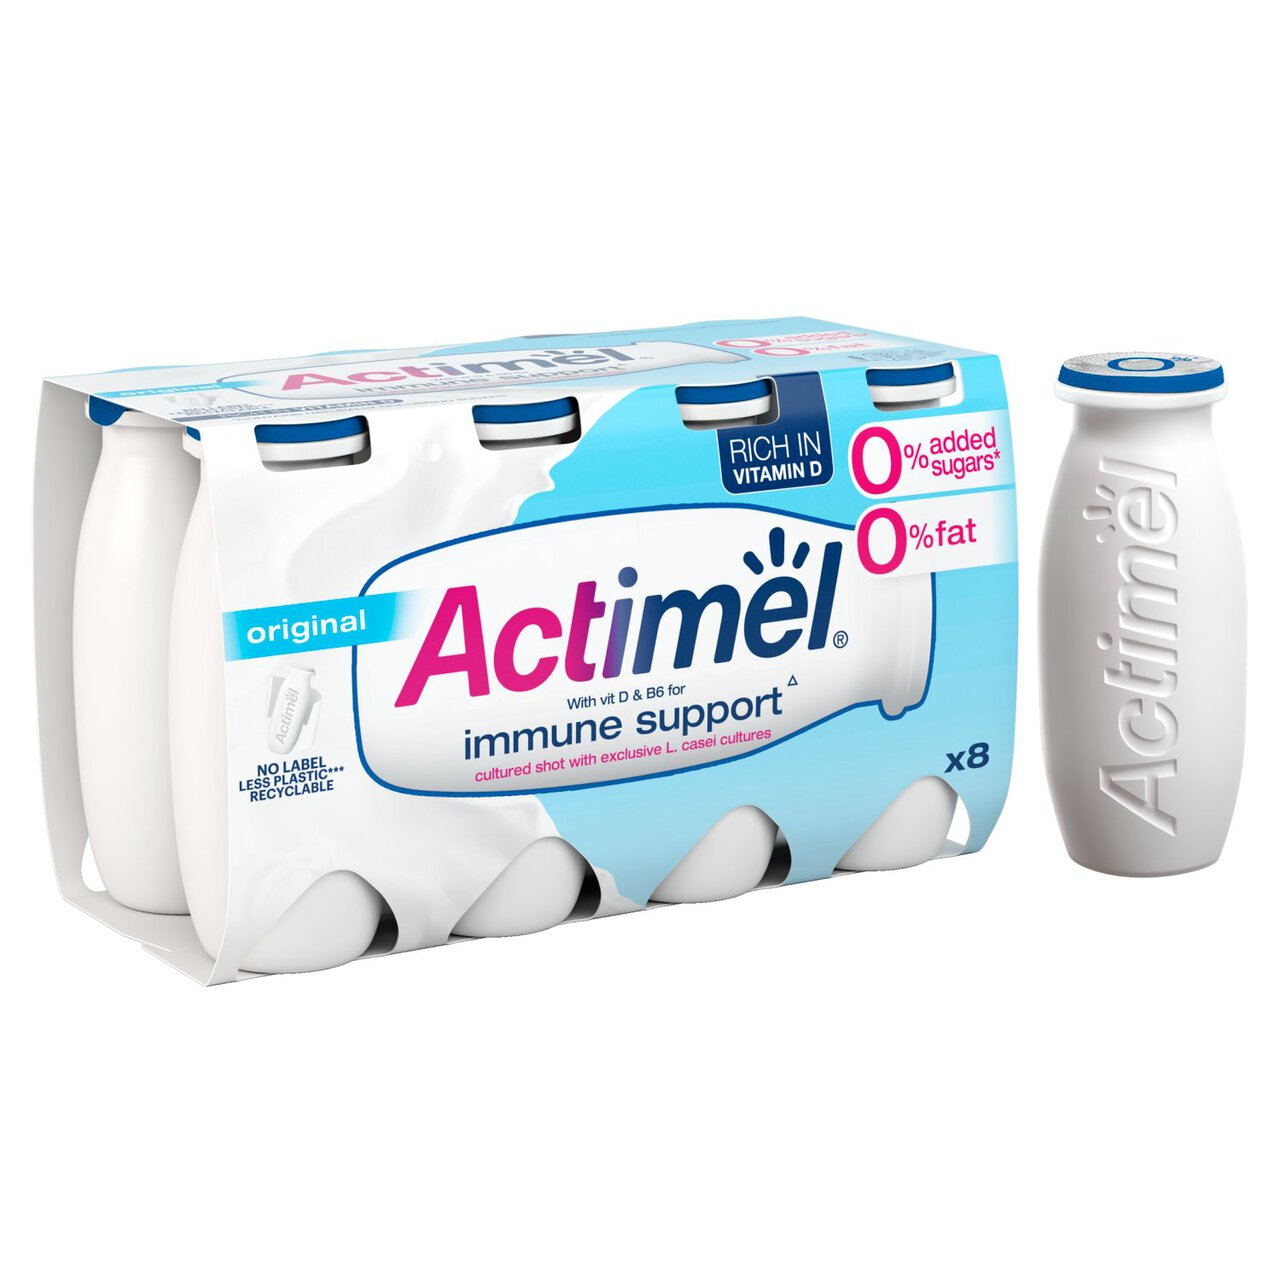 Yoghurt Zoom Fat Added 100g Drink x 8 Actimel Sugar | Free Original 0%